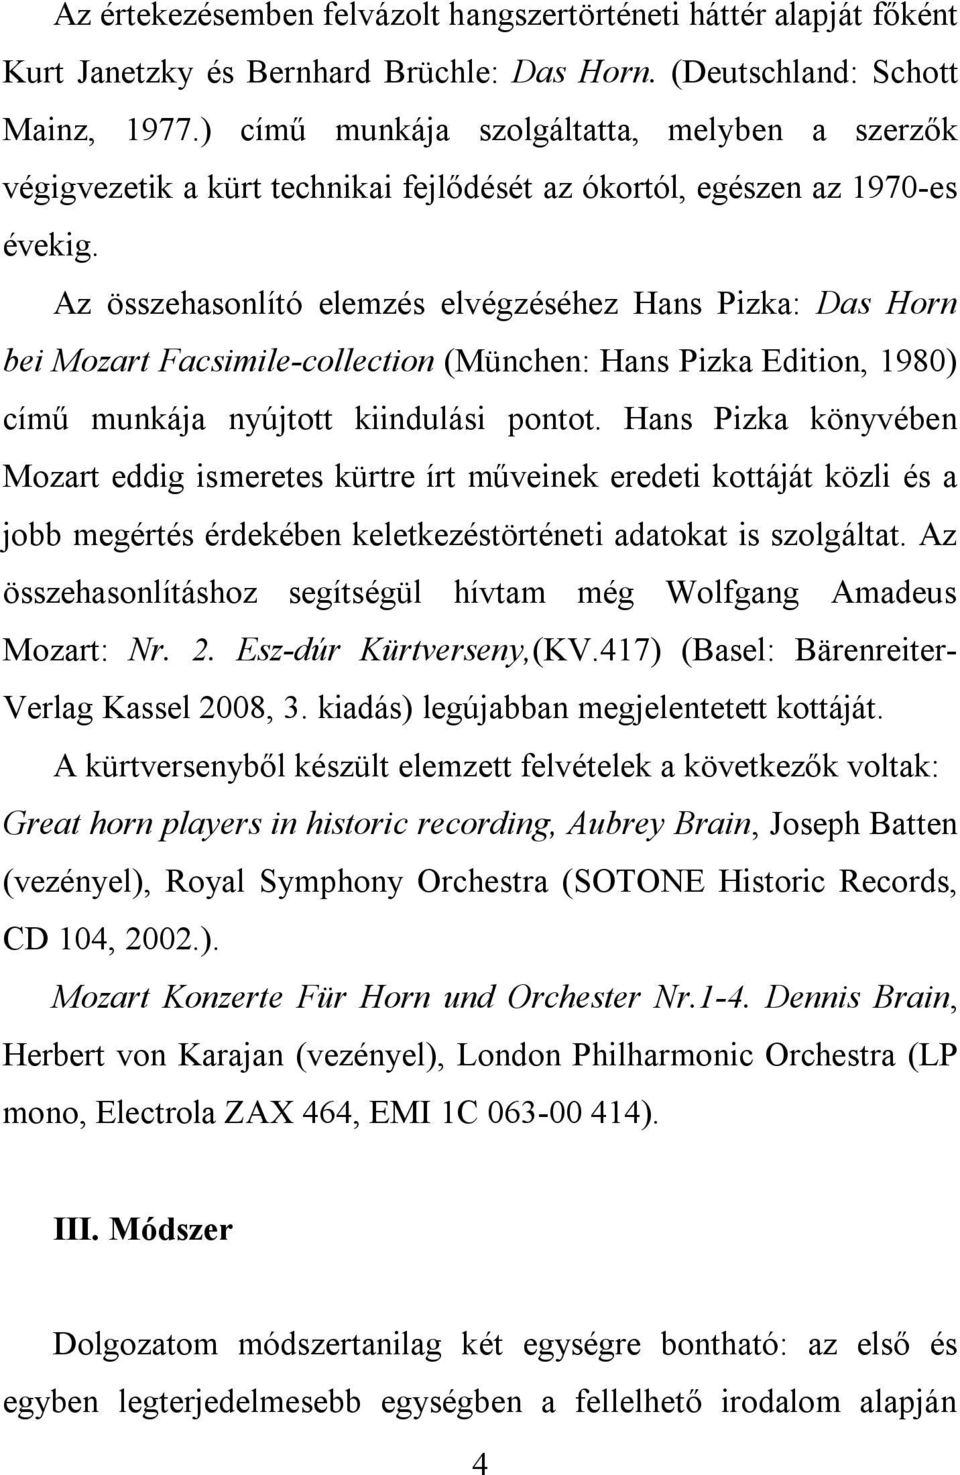 Az összehasonlító elemzés elvégzéséhez Hans Pizka: Das Horn bei Mozart Facsimile-collection (München: Hans Pizka Edition, 1980) című munkája nyújtott kiindulási pontot.